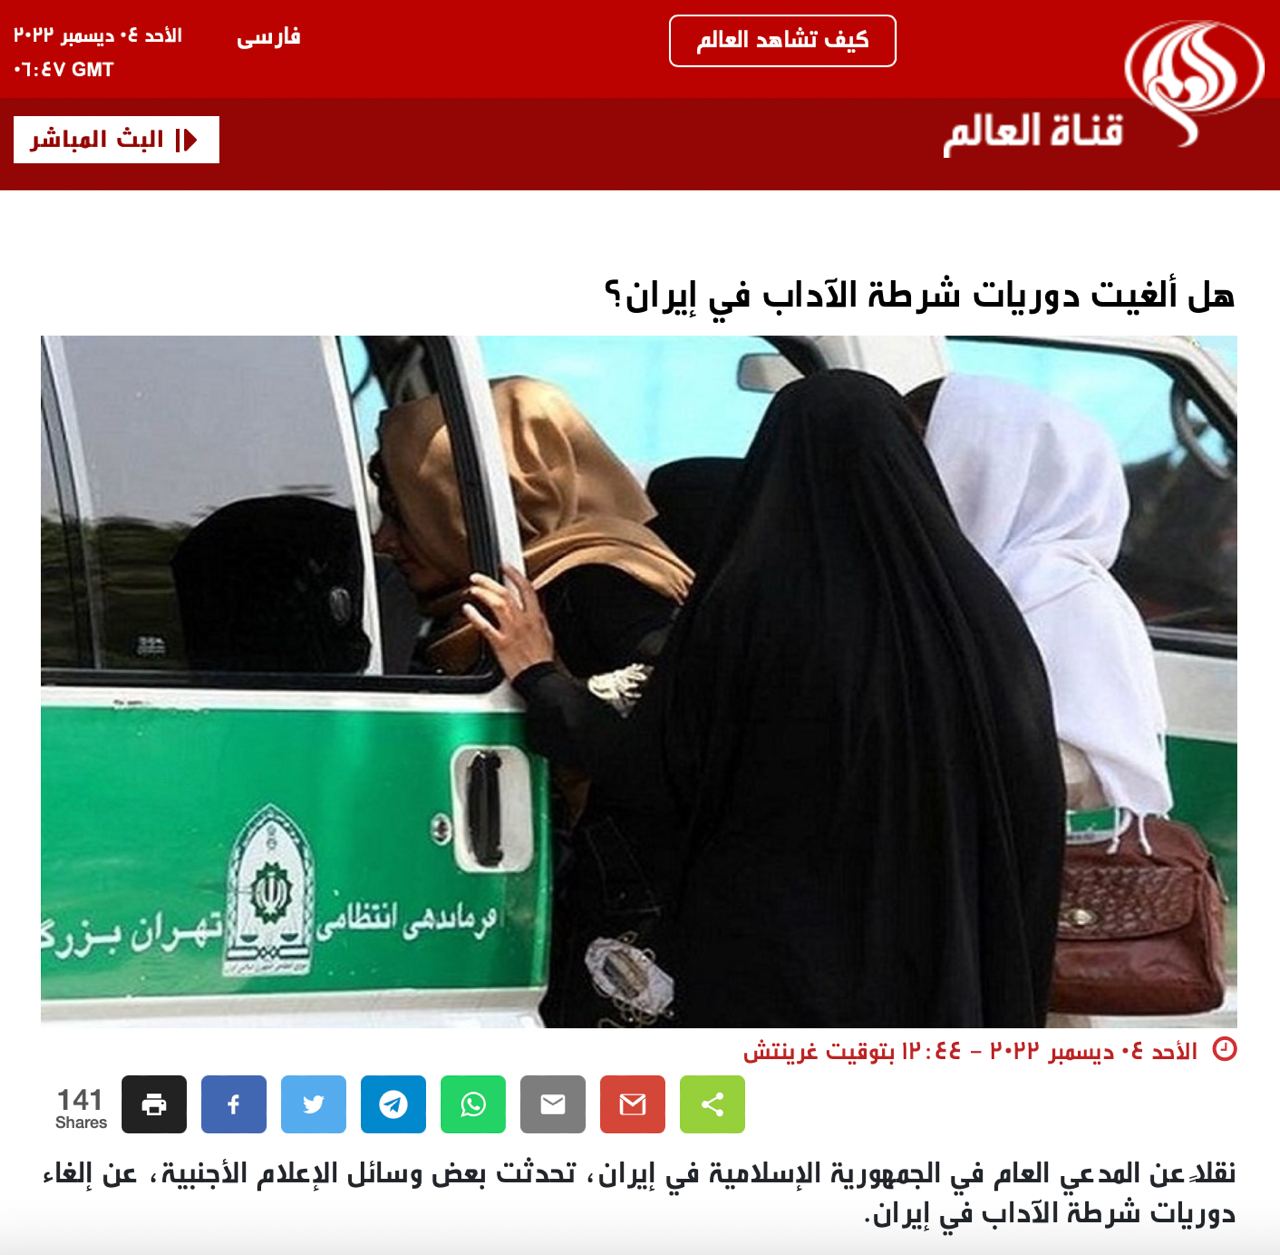 Иран не отменял «полицию нравов», - сообщают менстные СМИ